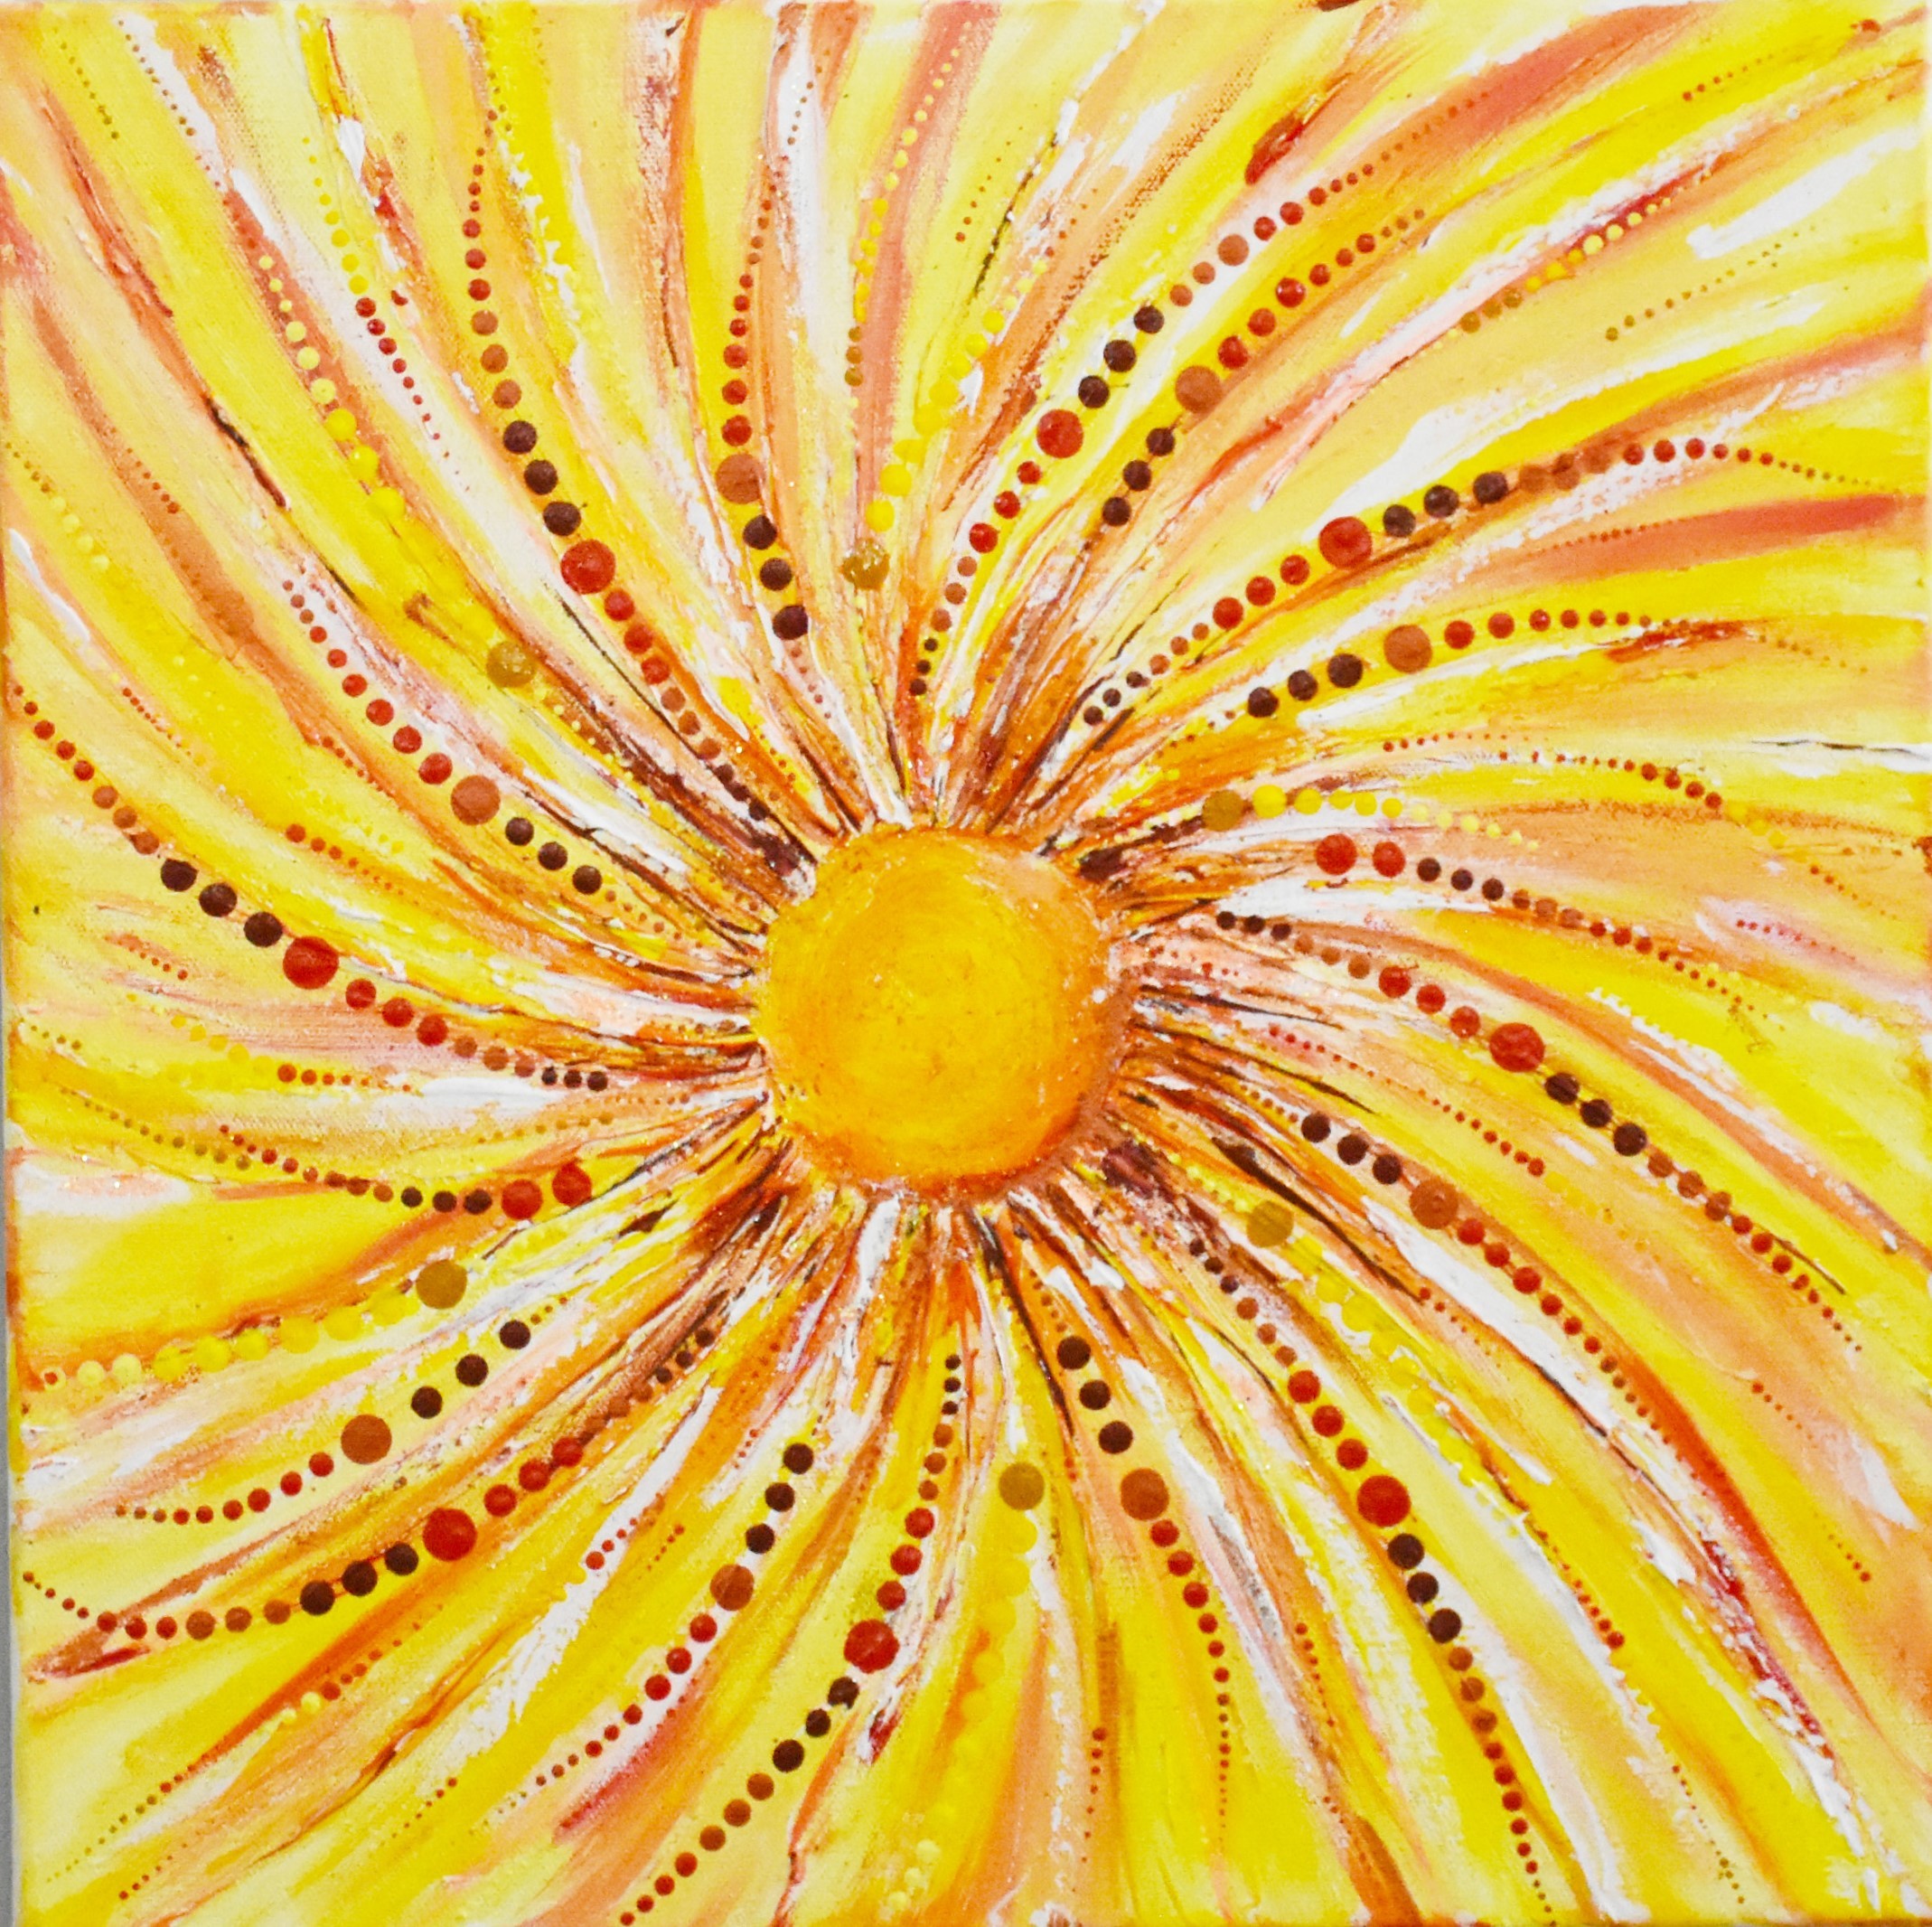 Birth of a Sunflower by Aysha Musthafa